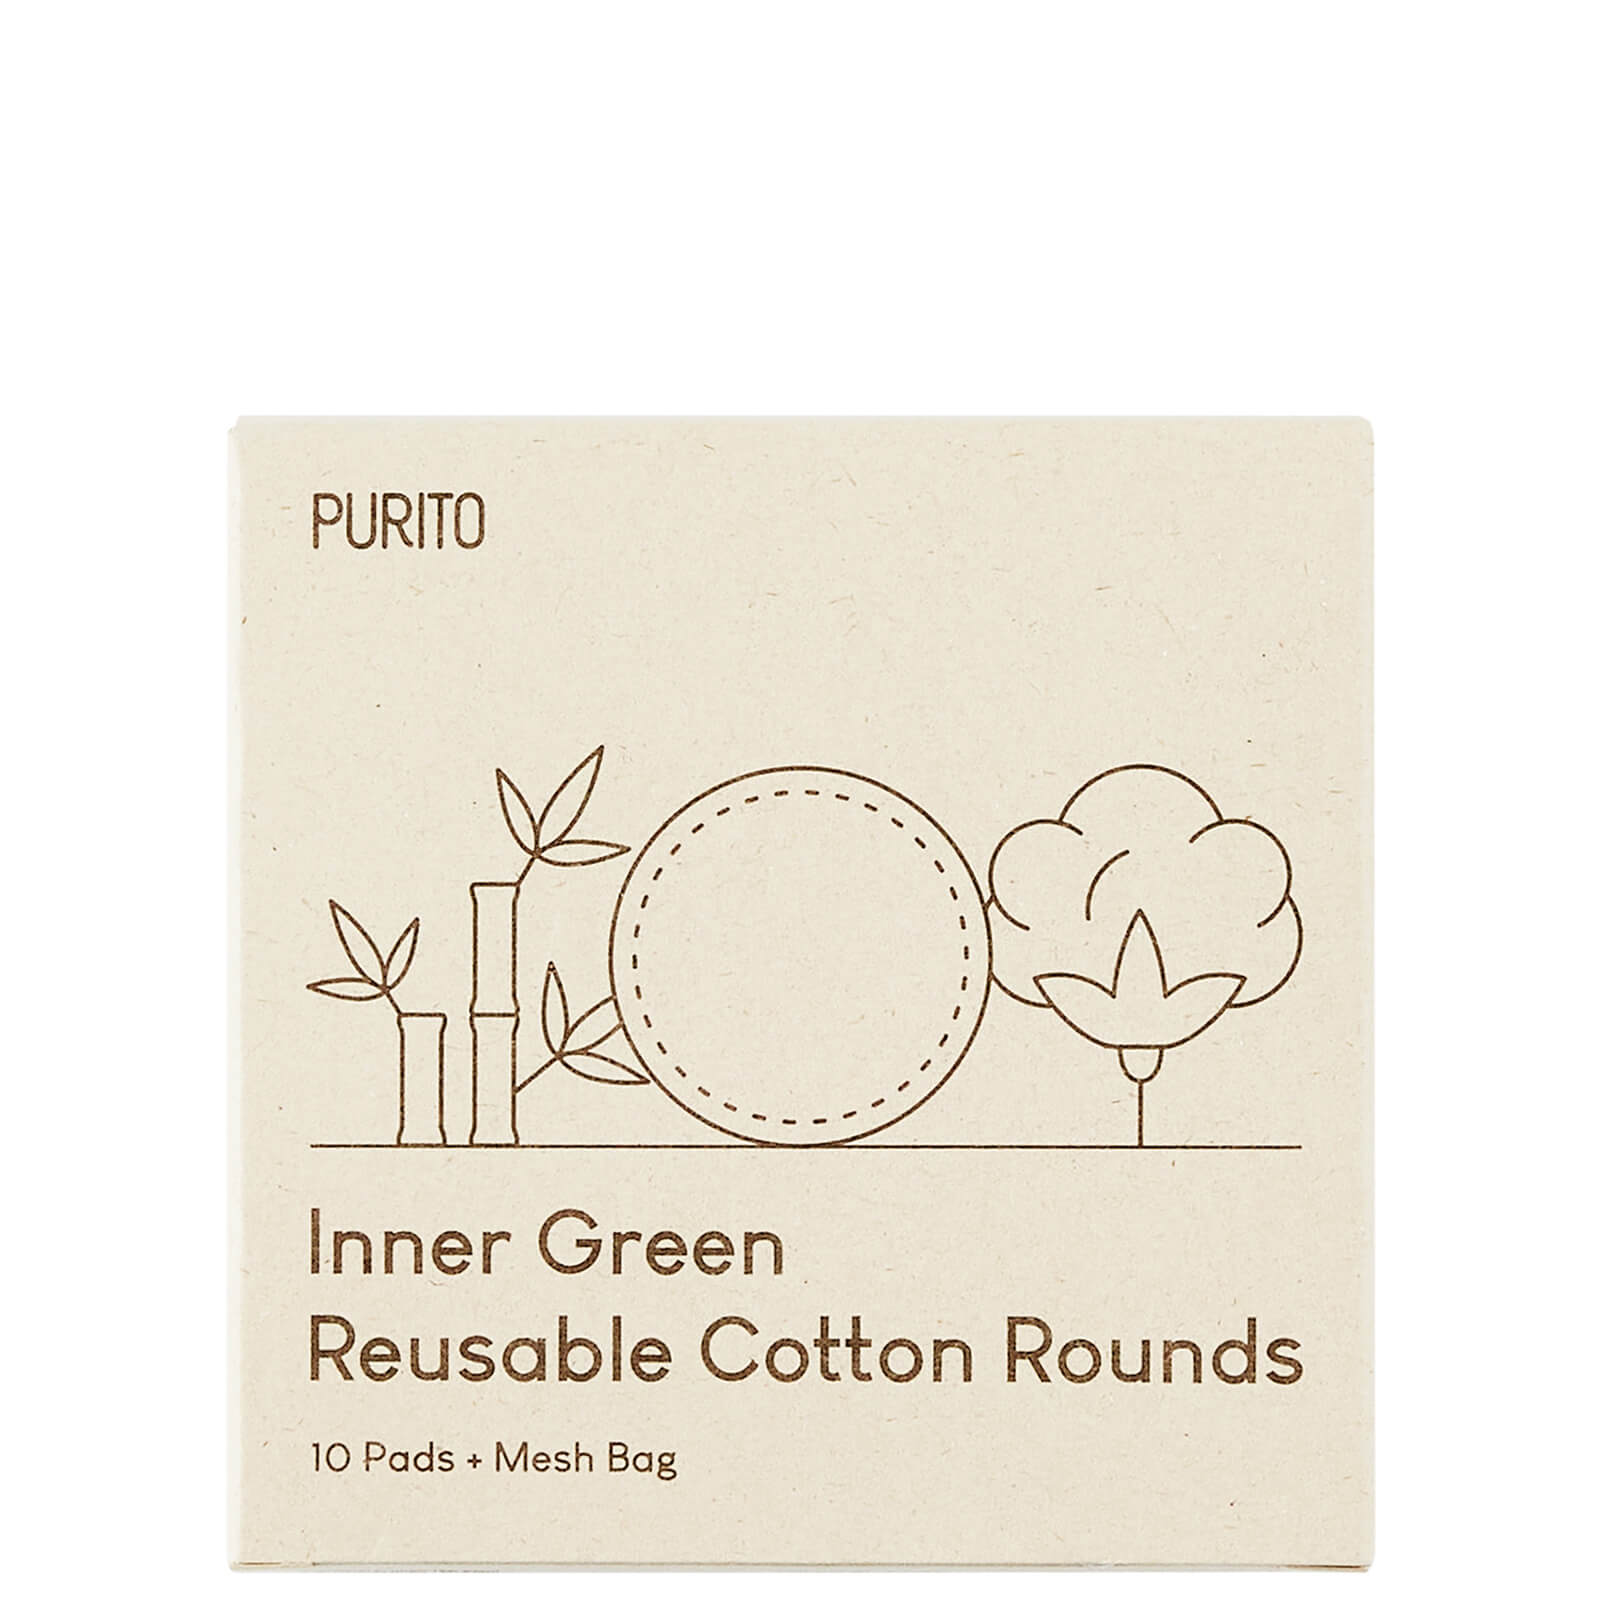 PURITO Inner Green Reusable Cotton Rounds 58g von PURITO